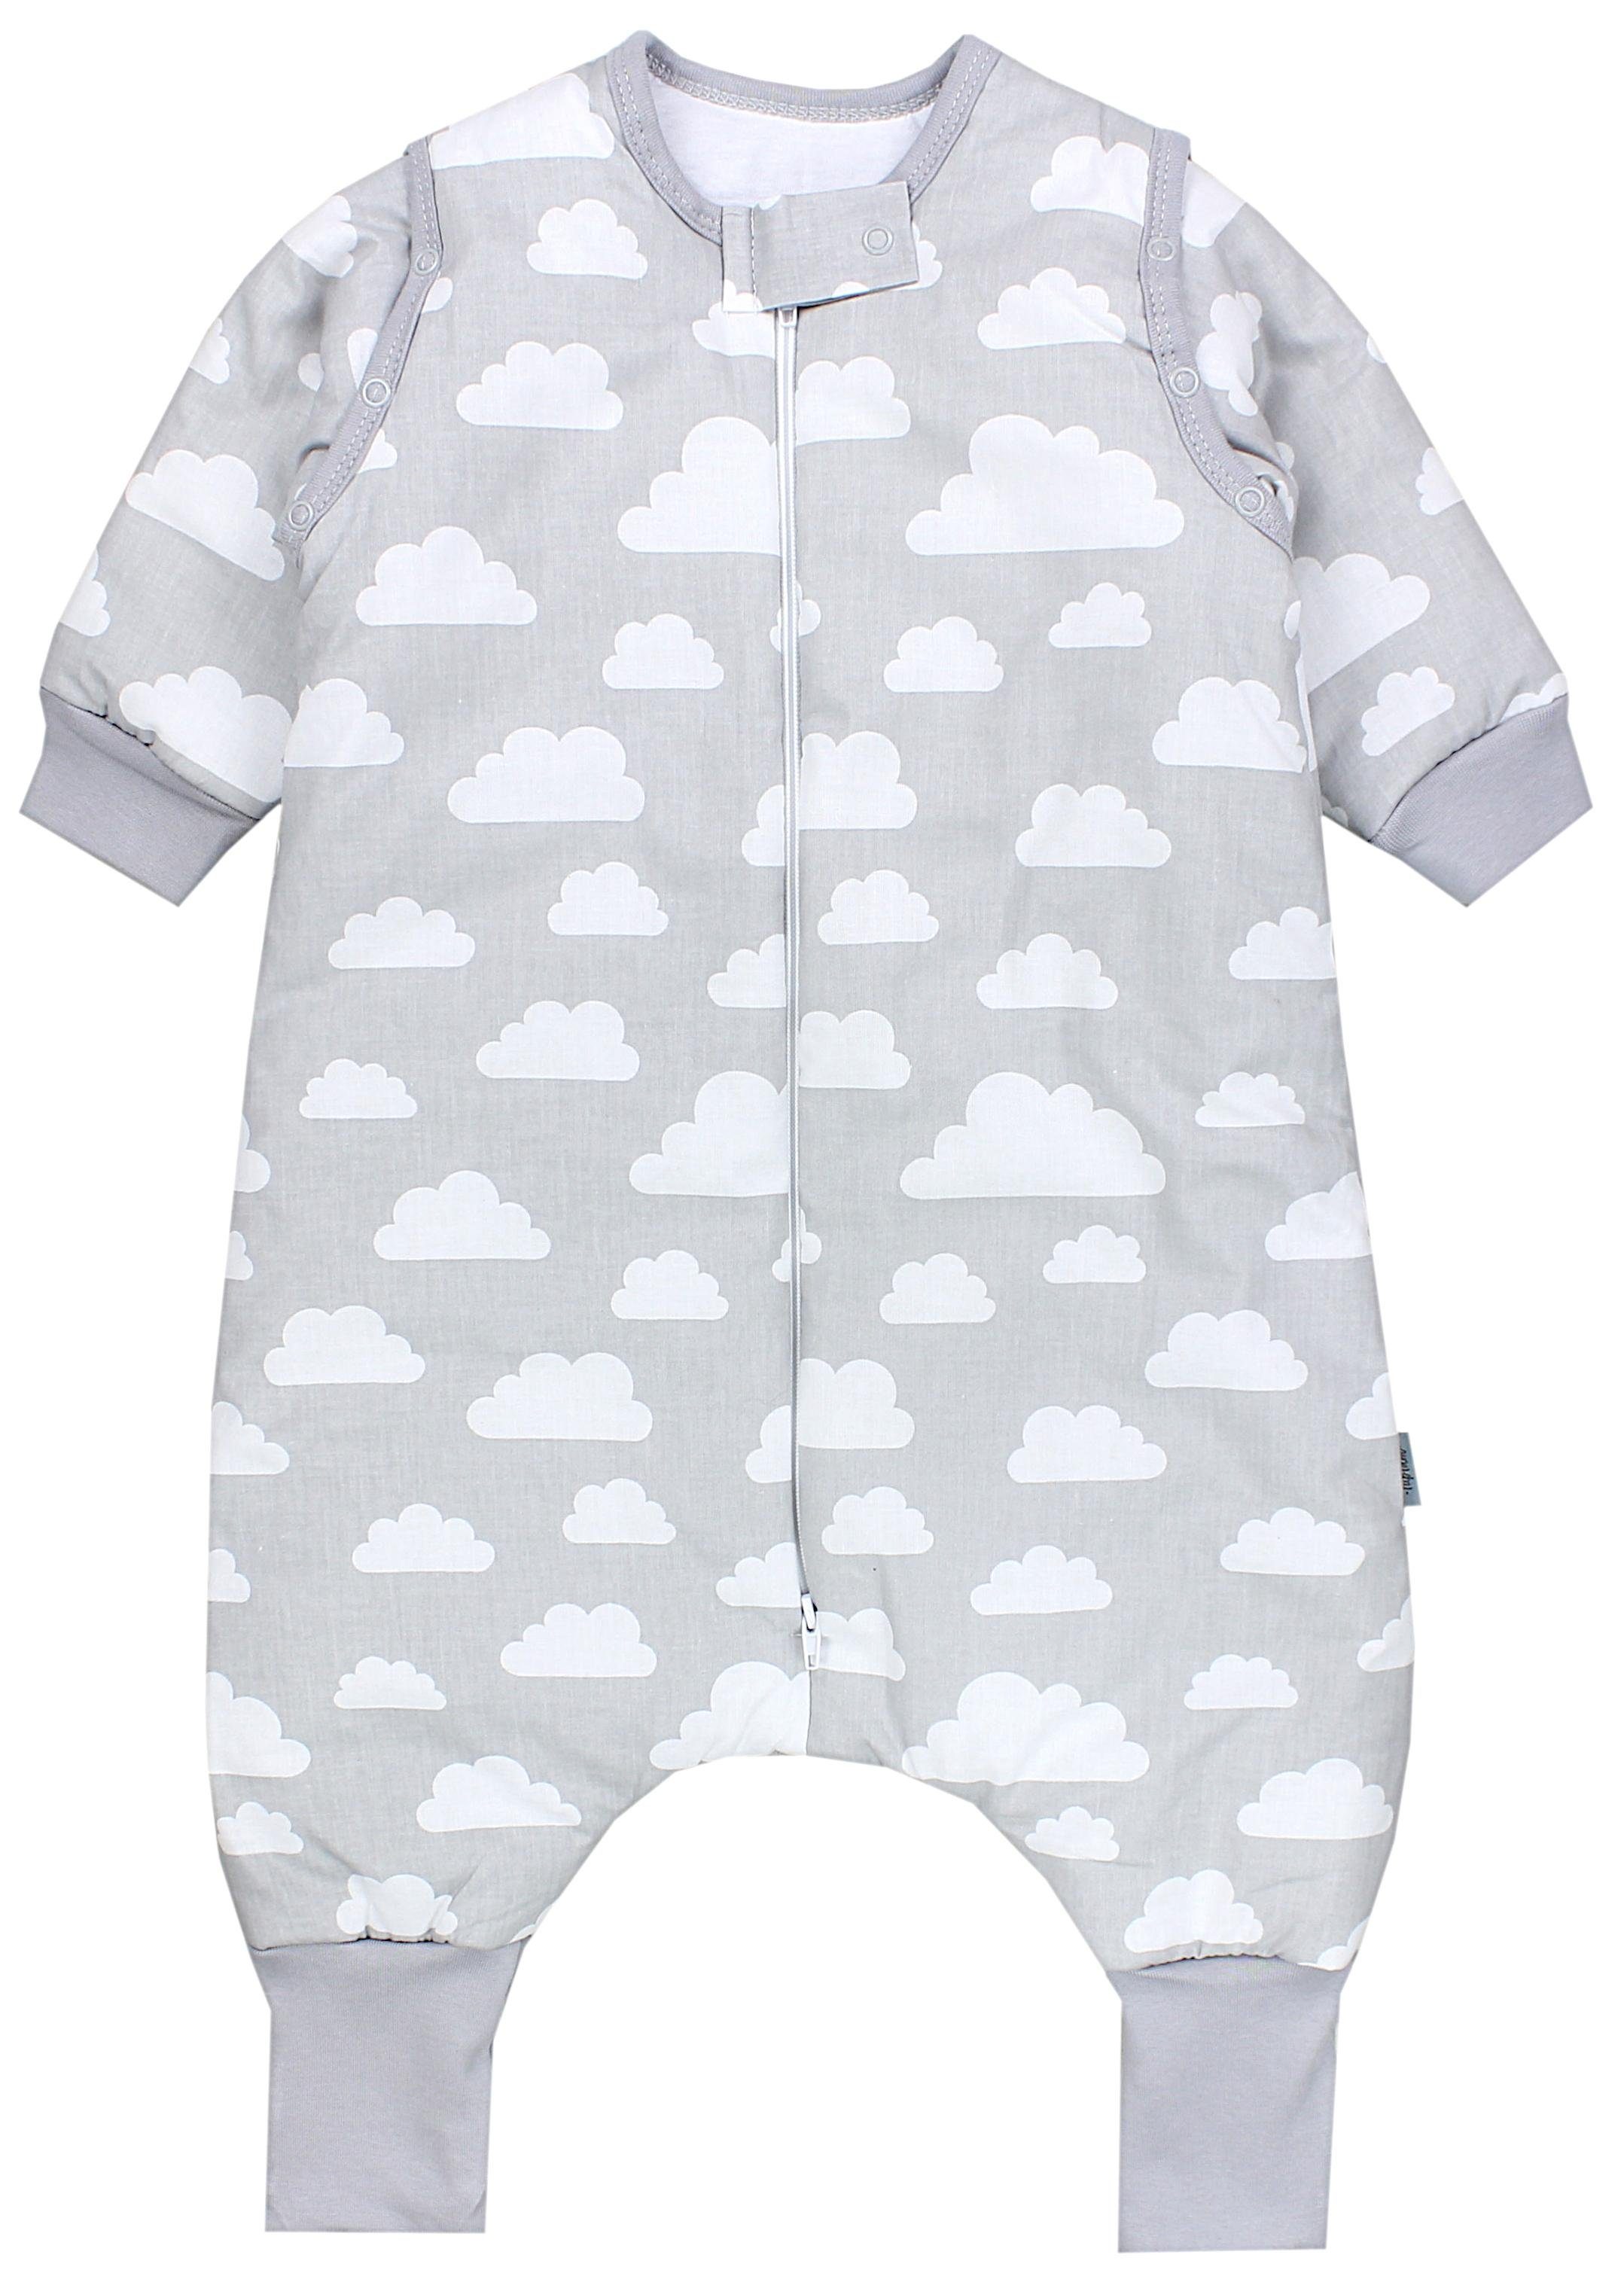 TupTam Babyschlafsack mit Armen und Beinen Winterschlafsack OEKO-TEX zertifiziert, Unisex Wolken Weiß